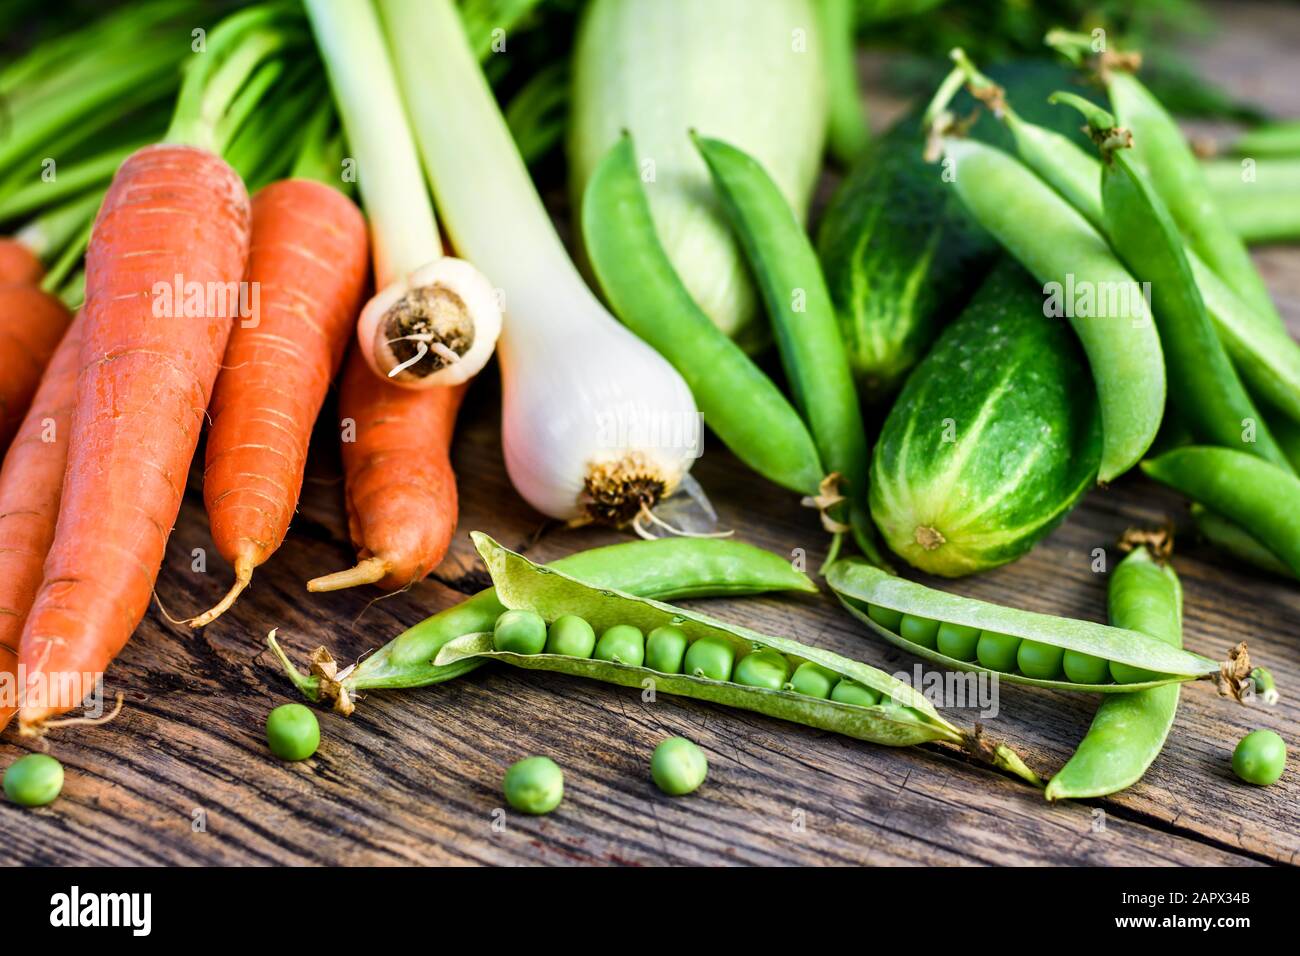 Divers légumes frais. Pois, carottes, concombre, courgettes et oignons sur une table en bois, nourriture saine. Mise au point sélective. Banque D'Images